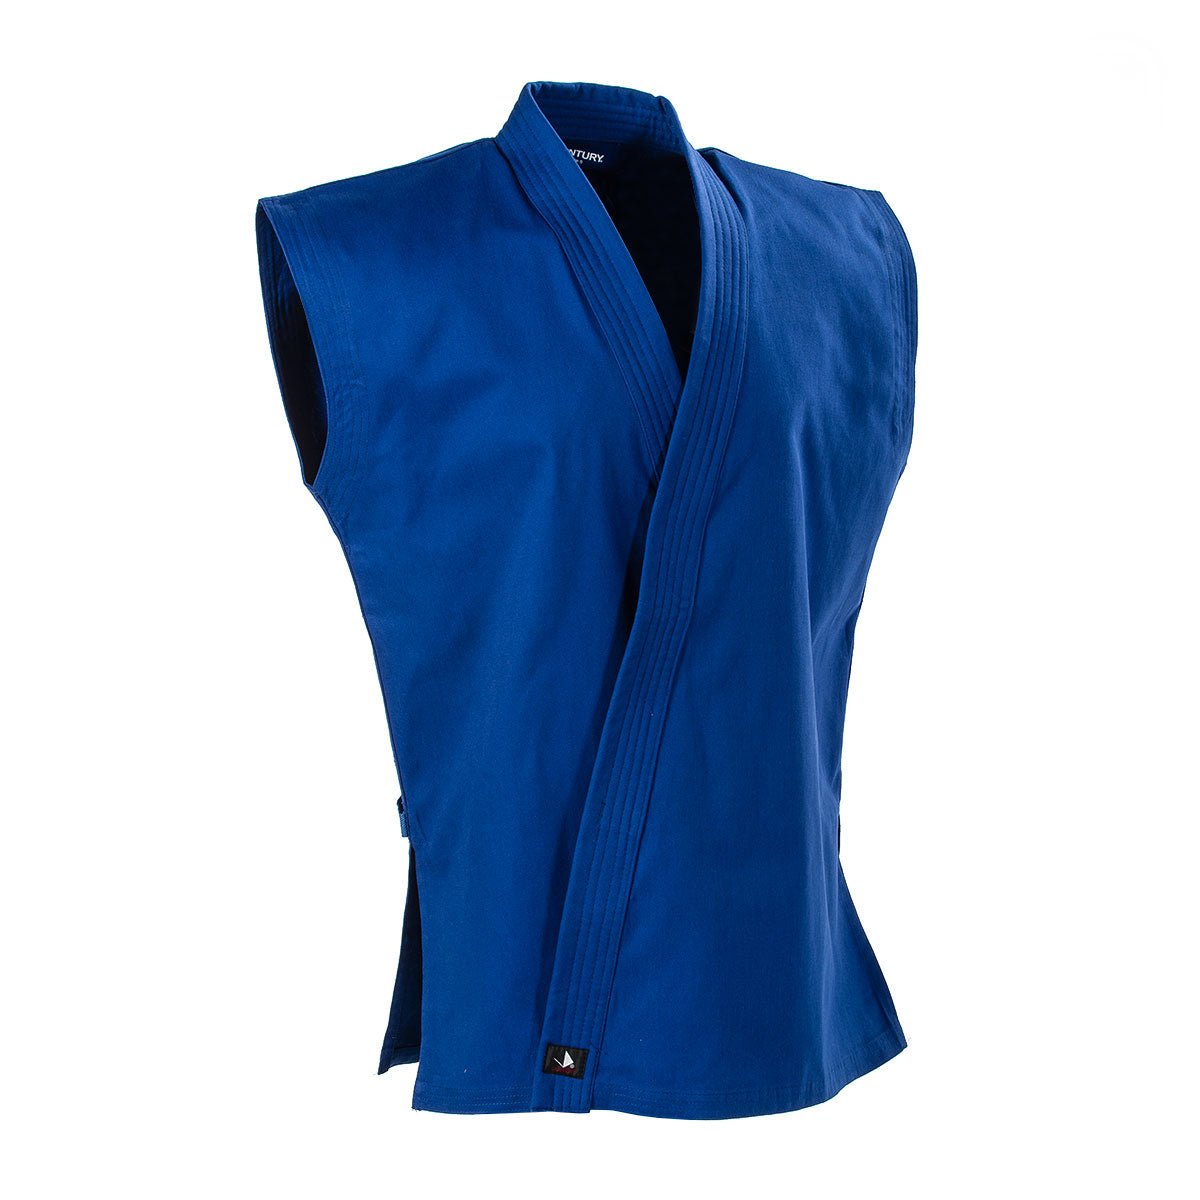 8 oz. Middleweight Brushed Cotton Sleeveless Traditional Jacket Blue